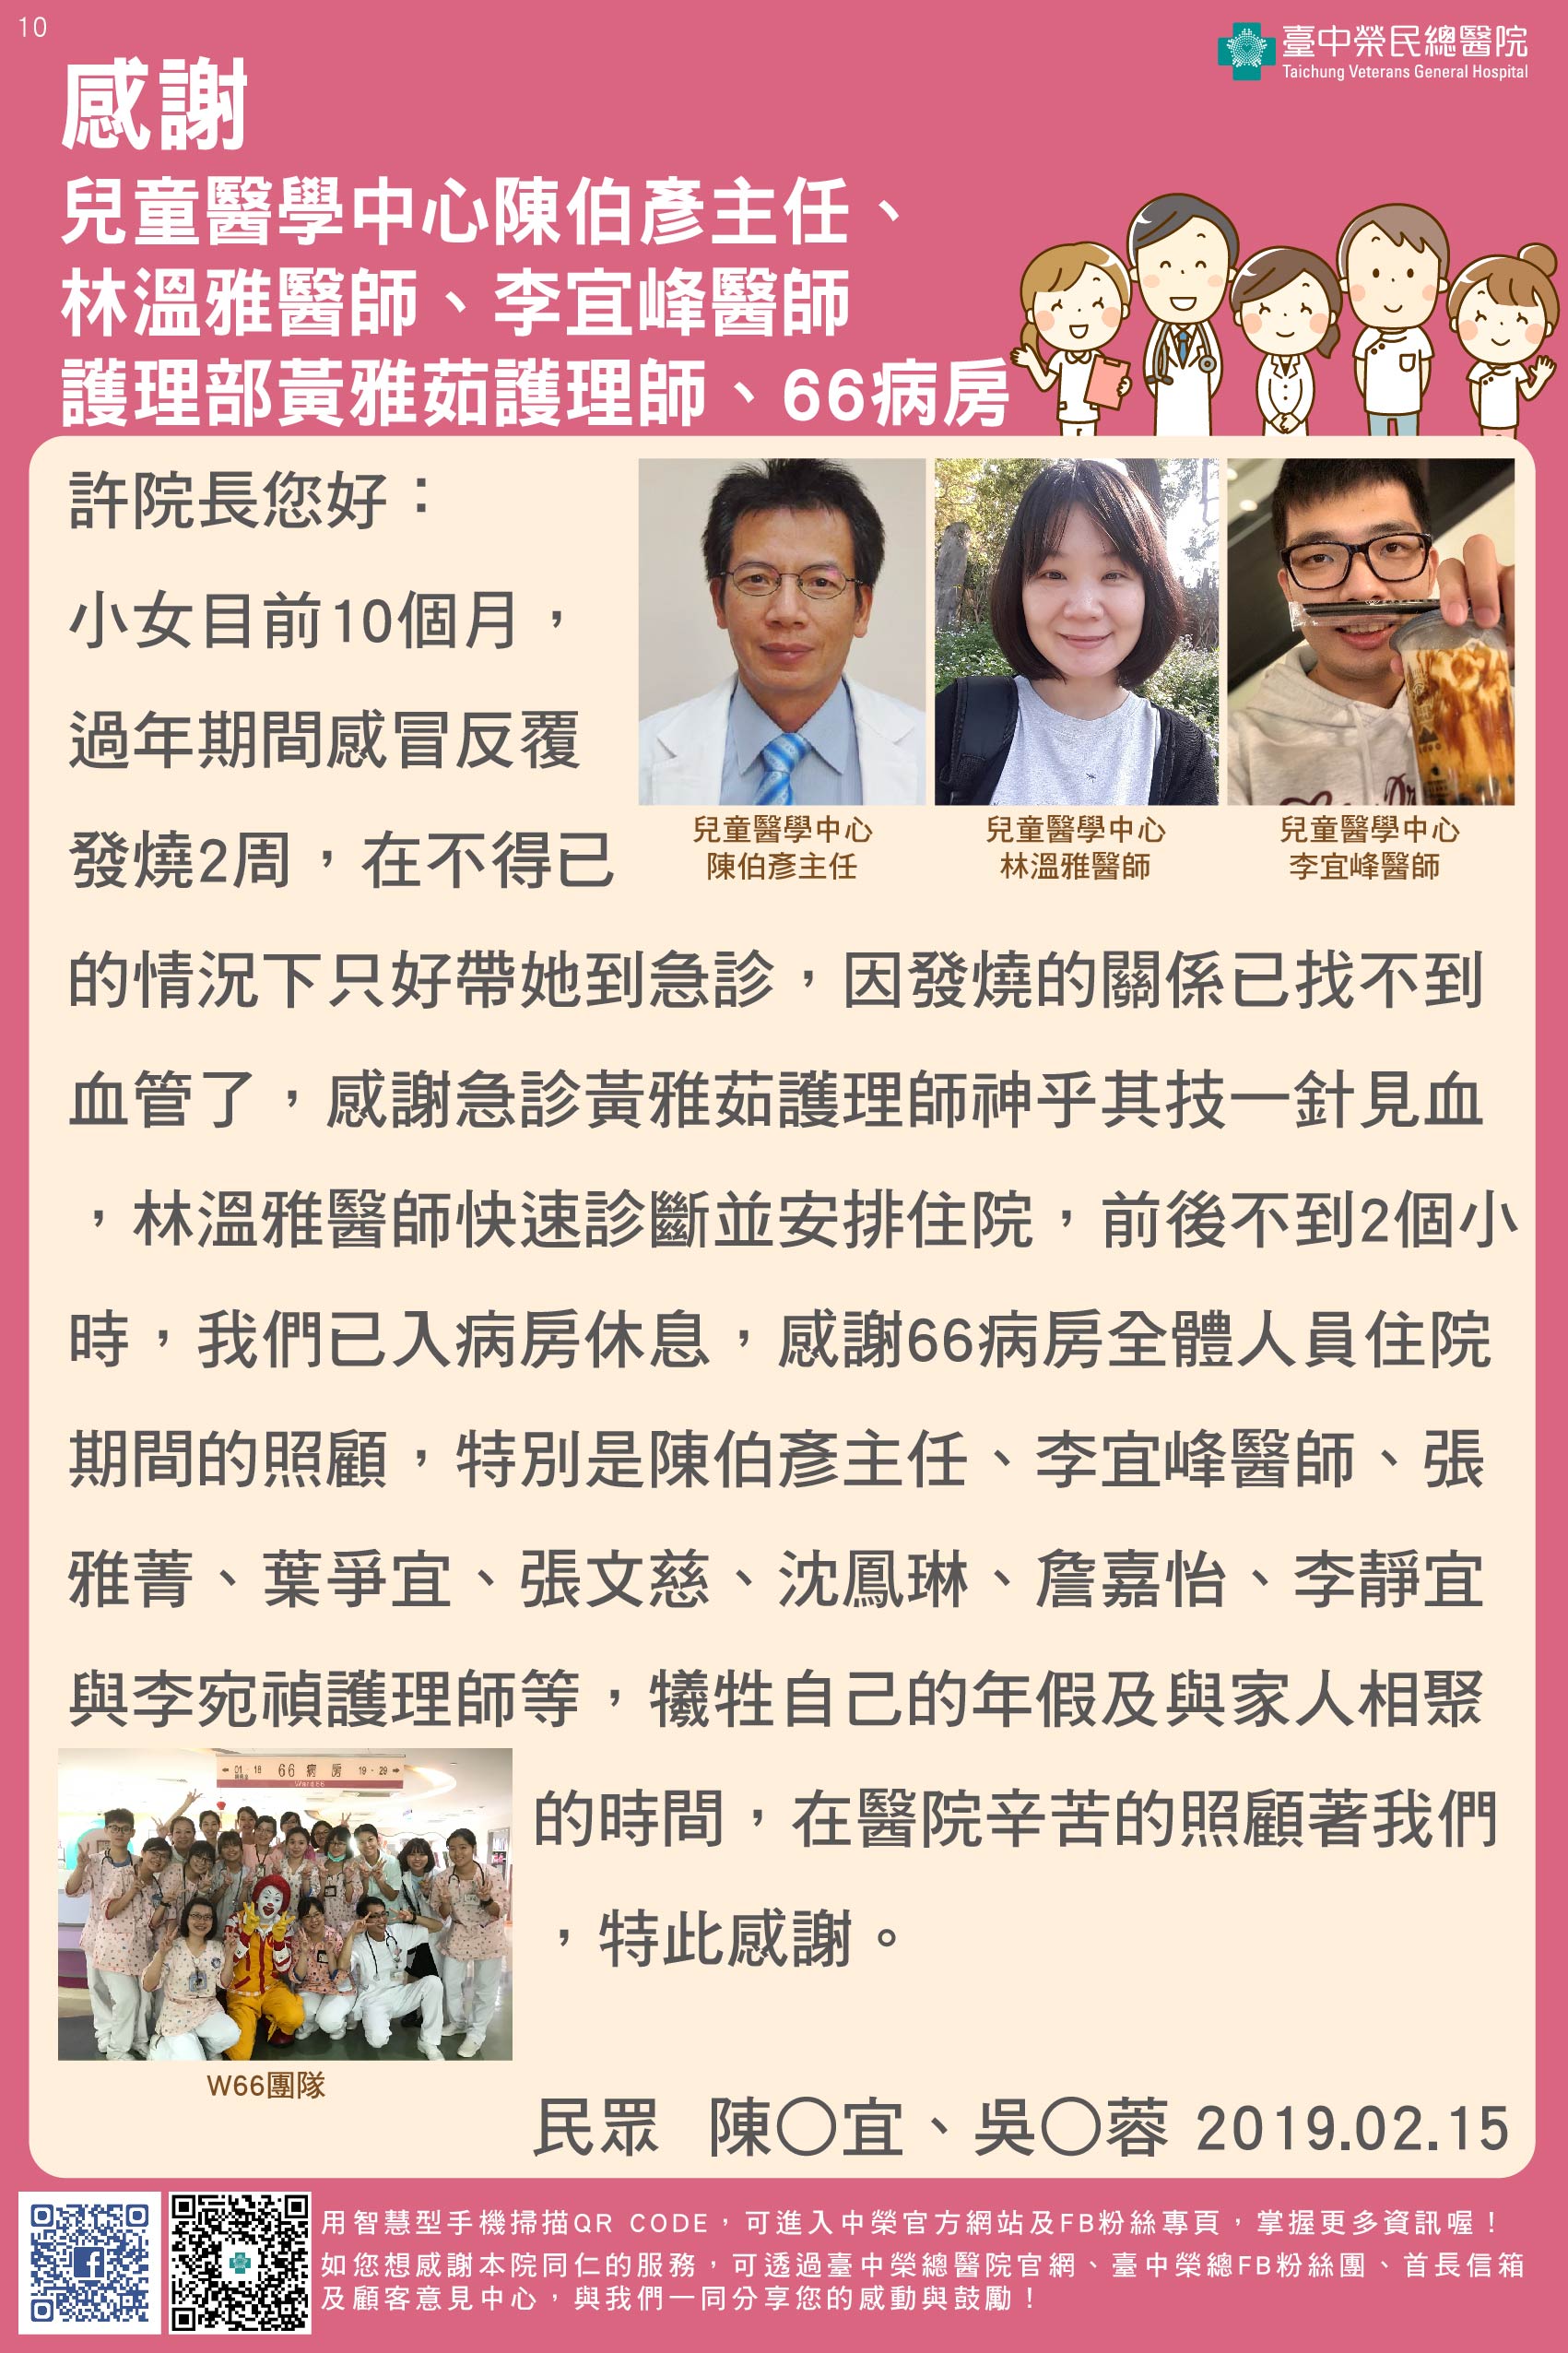 感謝兒童醫學中心陳伯彥主任、林溫雅醫師、李宜峰醫師、護理部黃雅茹護理師、66病房